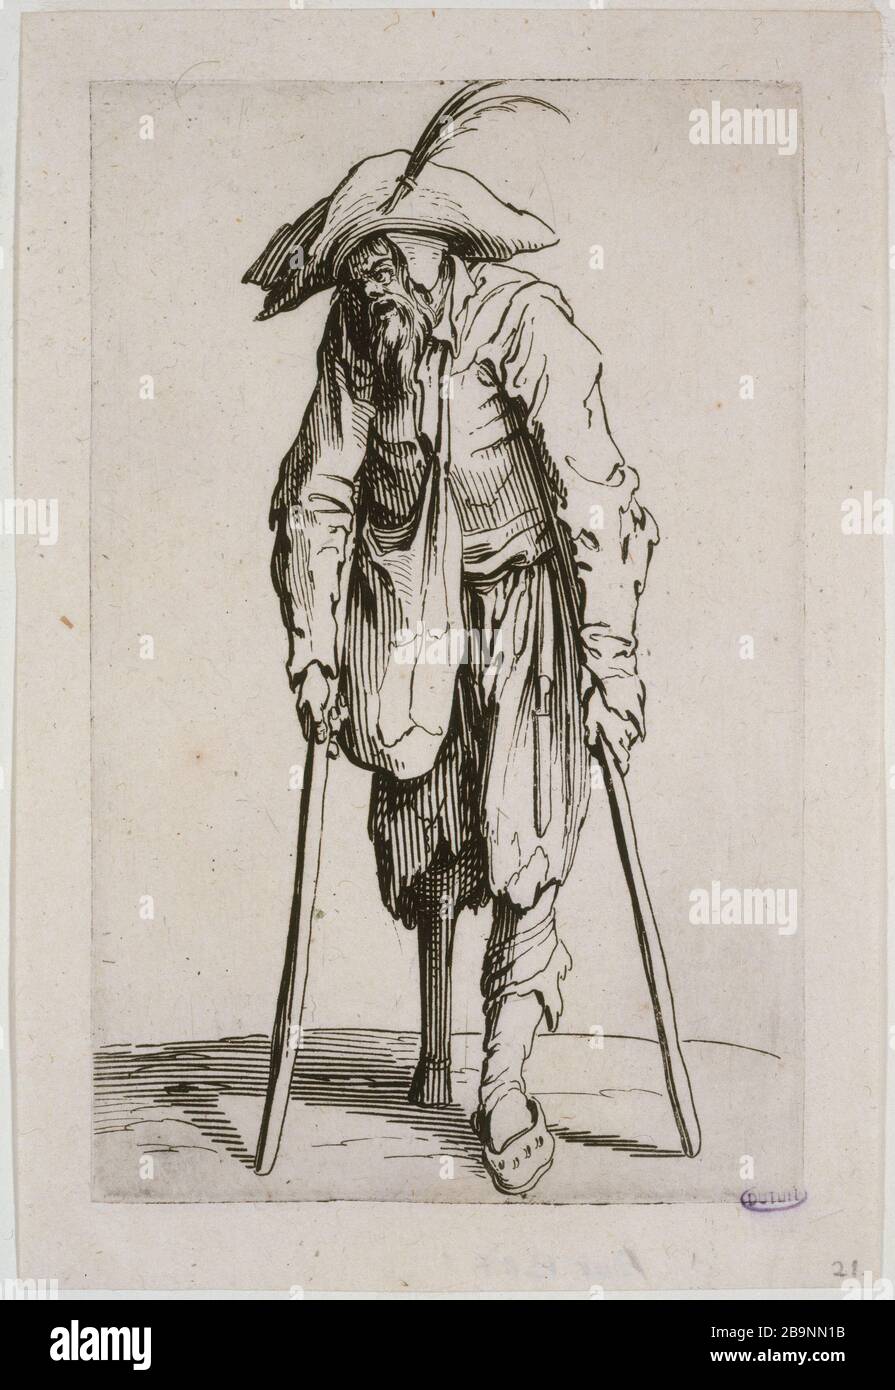 Beggar A LEG WOOD Jacques Callot (1592-1635). 'Les Gueux, le mendiant à la jambe de bois, 1er état'. Eau-forte. Musée des Beaux-Arts de la Ville de Paris, Petit Palais. Stock Photo